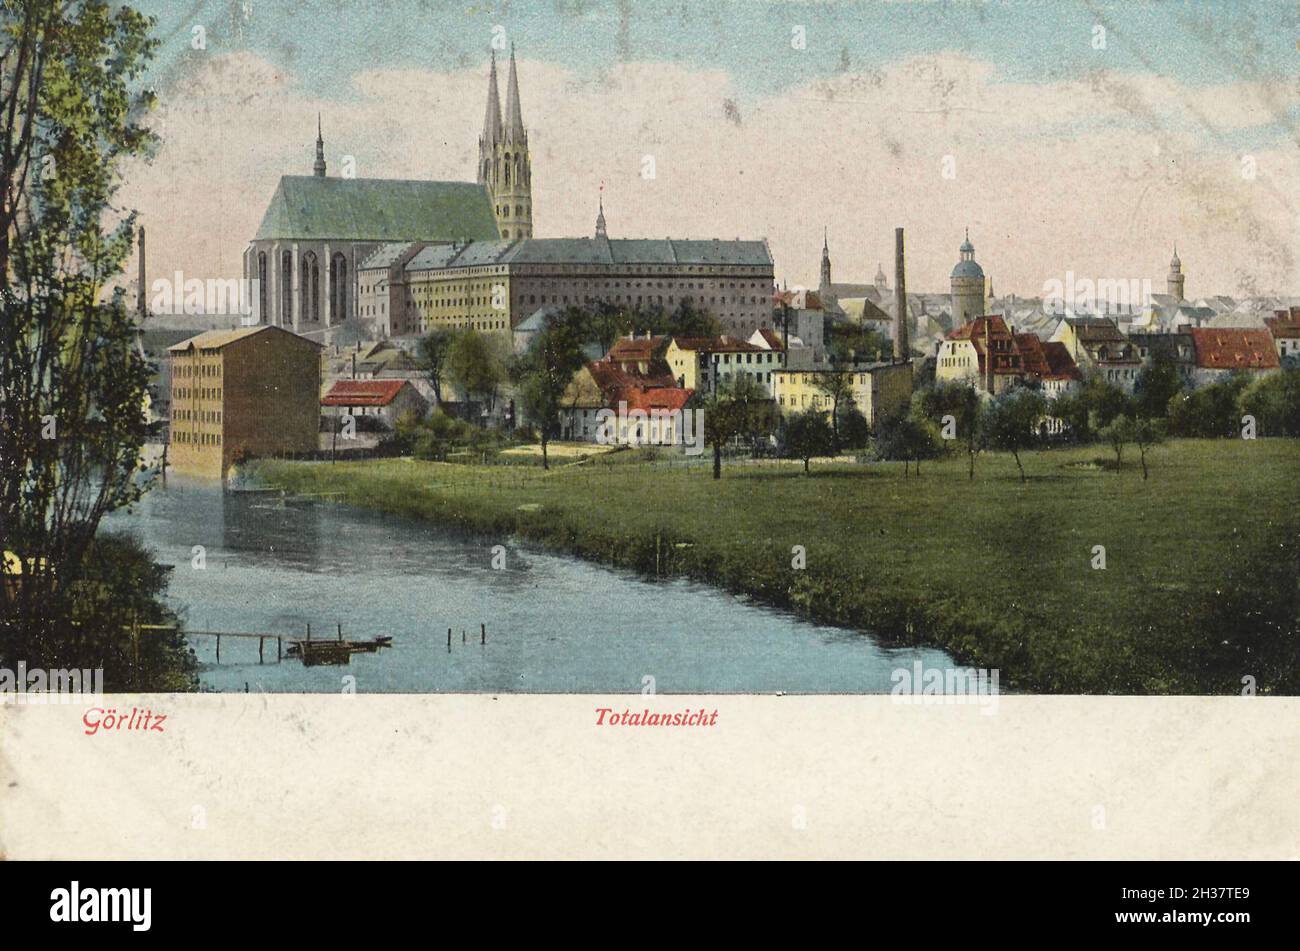 Gesamtansicht von Görlitz, Sachsen, Deutschland, Ansicht von CA 1910, digitale Reproduktion einer gemeinfreien Postkarte Banque D'Images